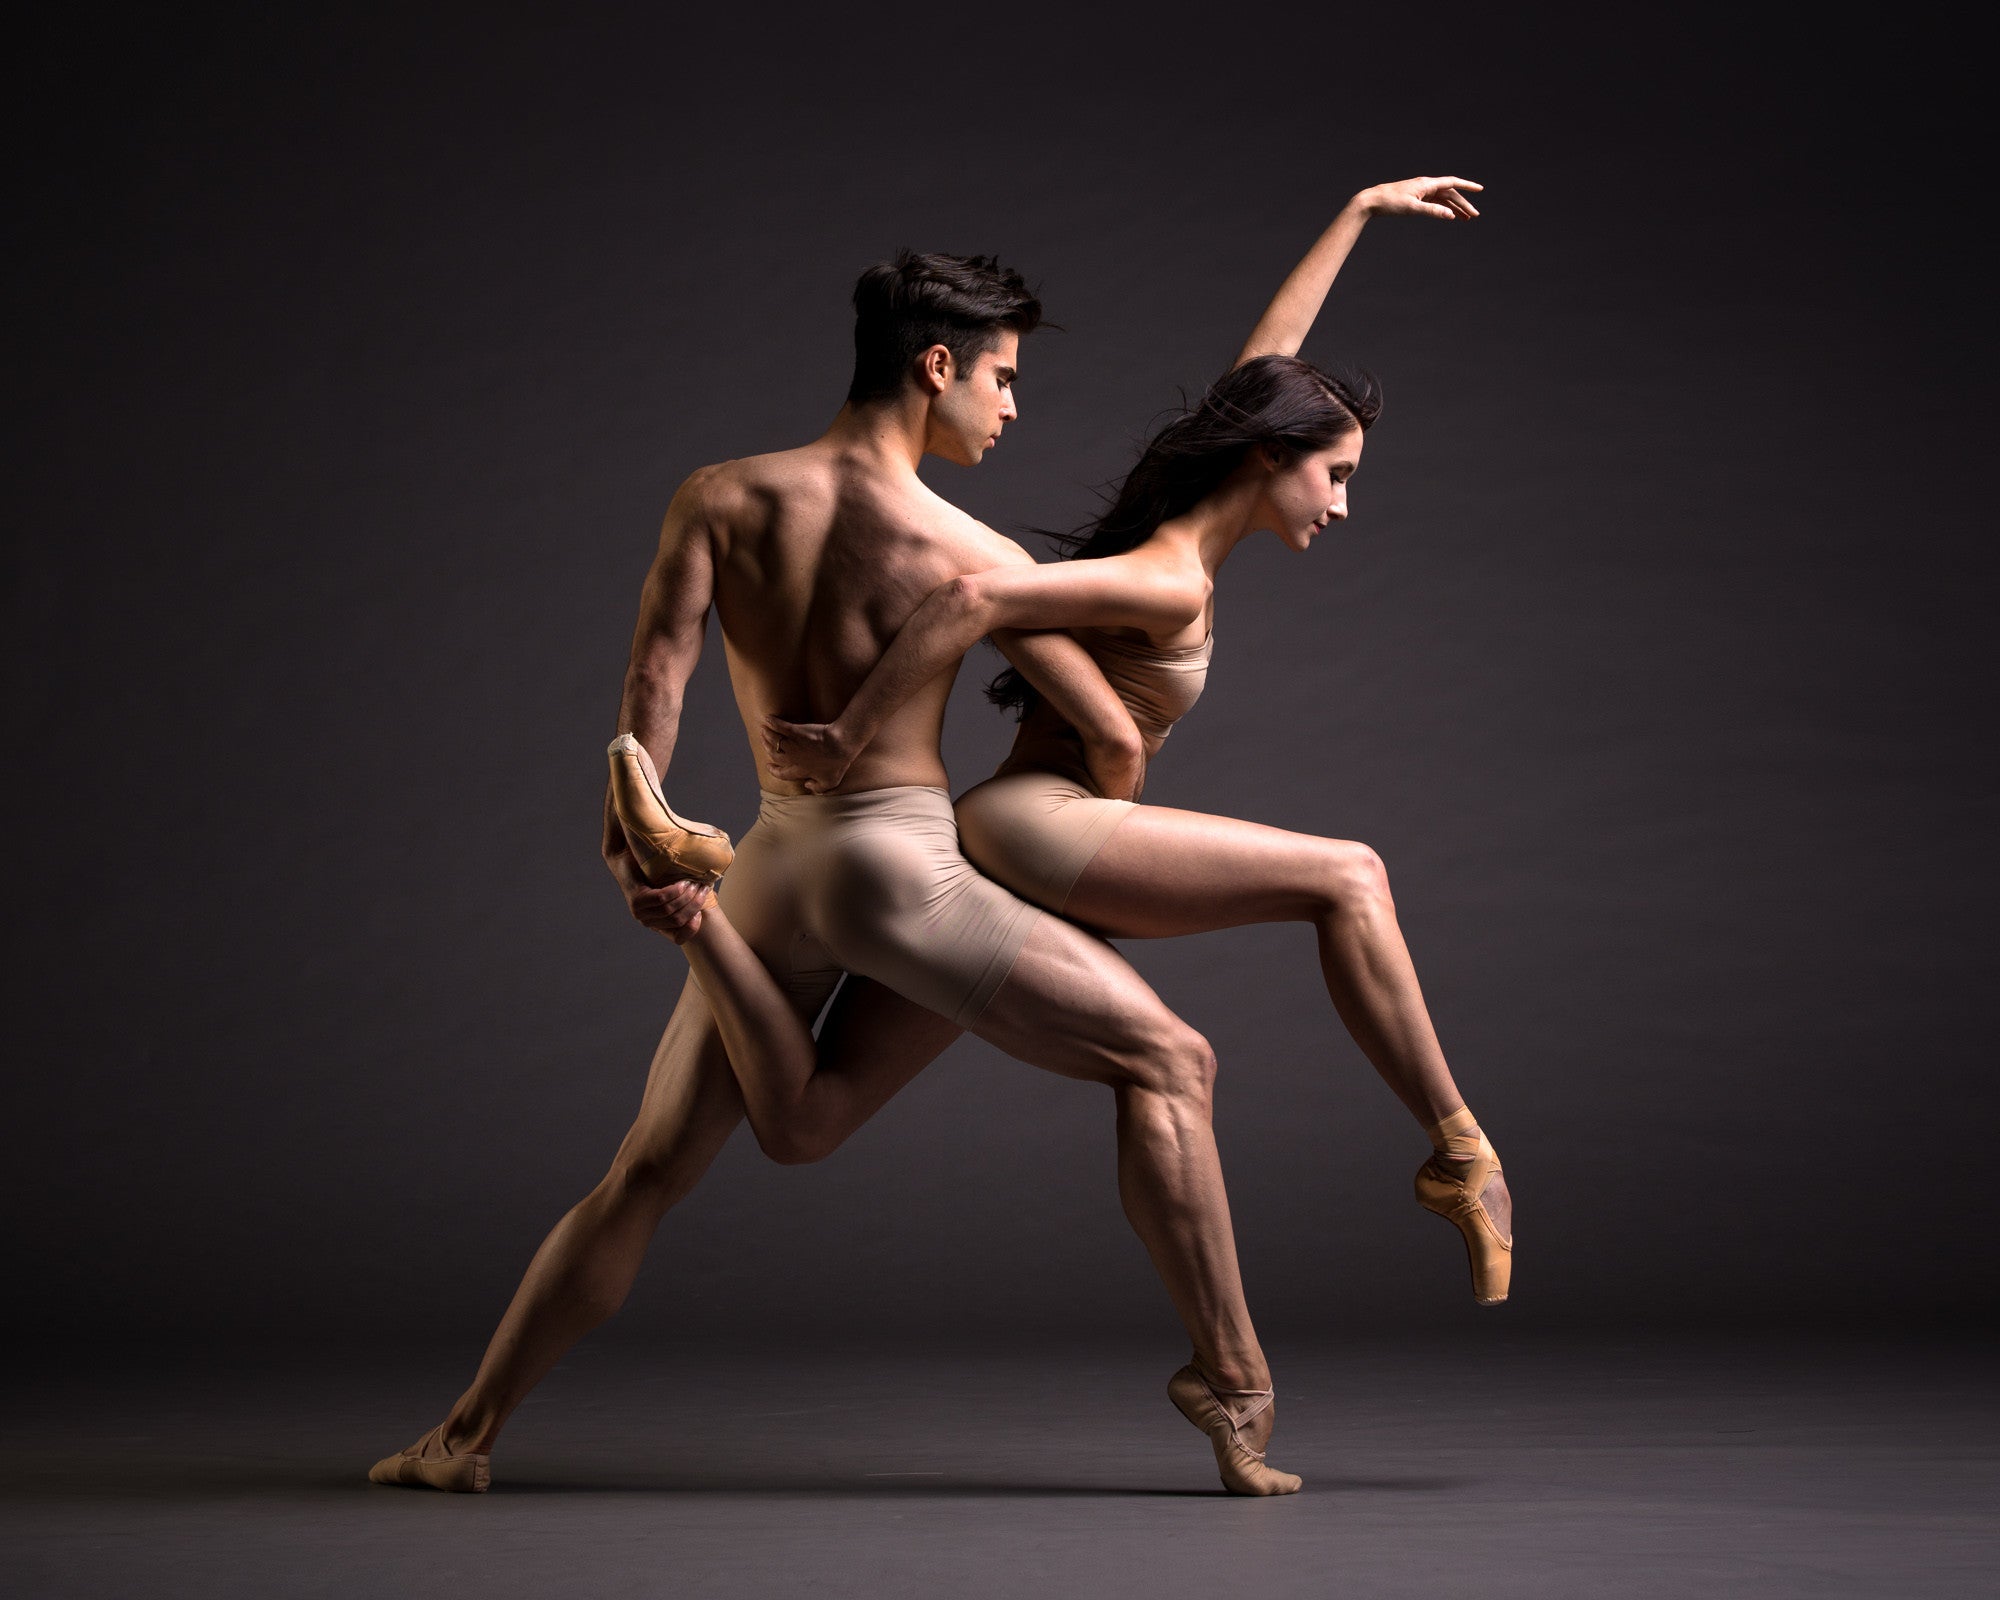 Art Dance Photography Prints - Purchase Online the artwork: Dancers duo  by Francsico Estevez